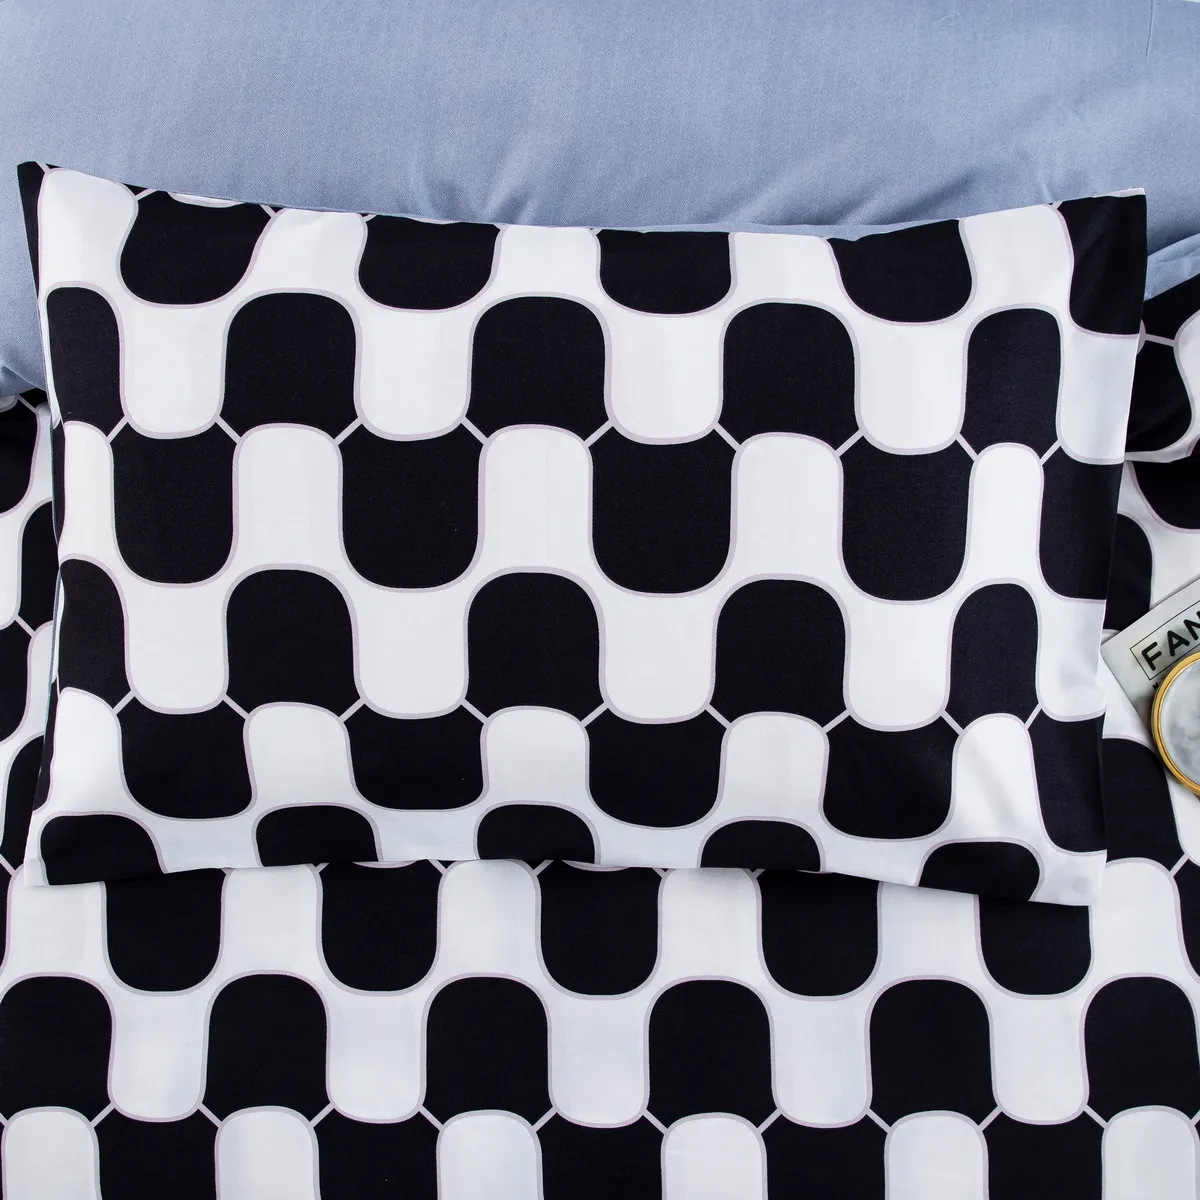 2/3pcs Juego de ropa de cama moderno y minimalista con patrón geométrico de dibujos animados, incluye funda nórdica y fundas de almohada blanco y negro big image 1